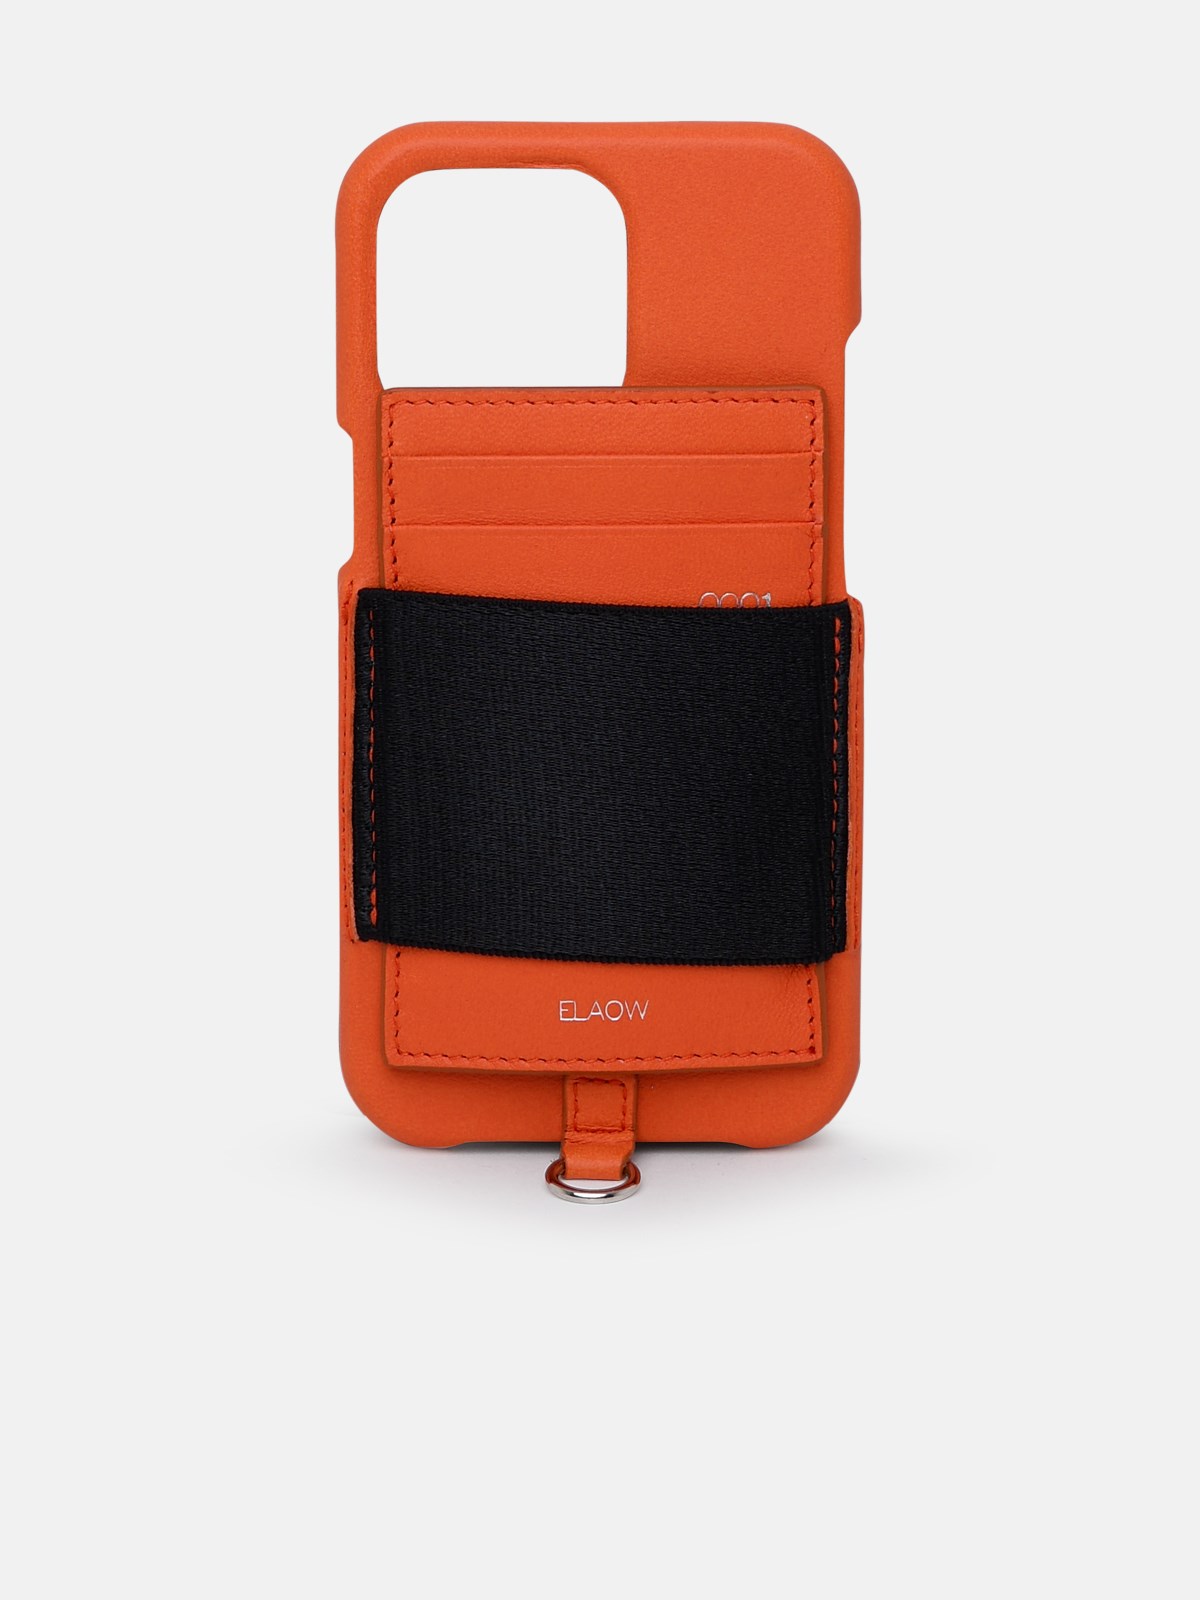 Elaow Orange Plastic I-phone Case 13